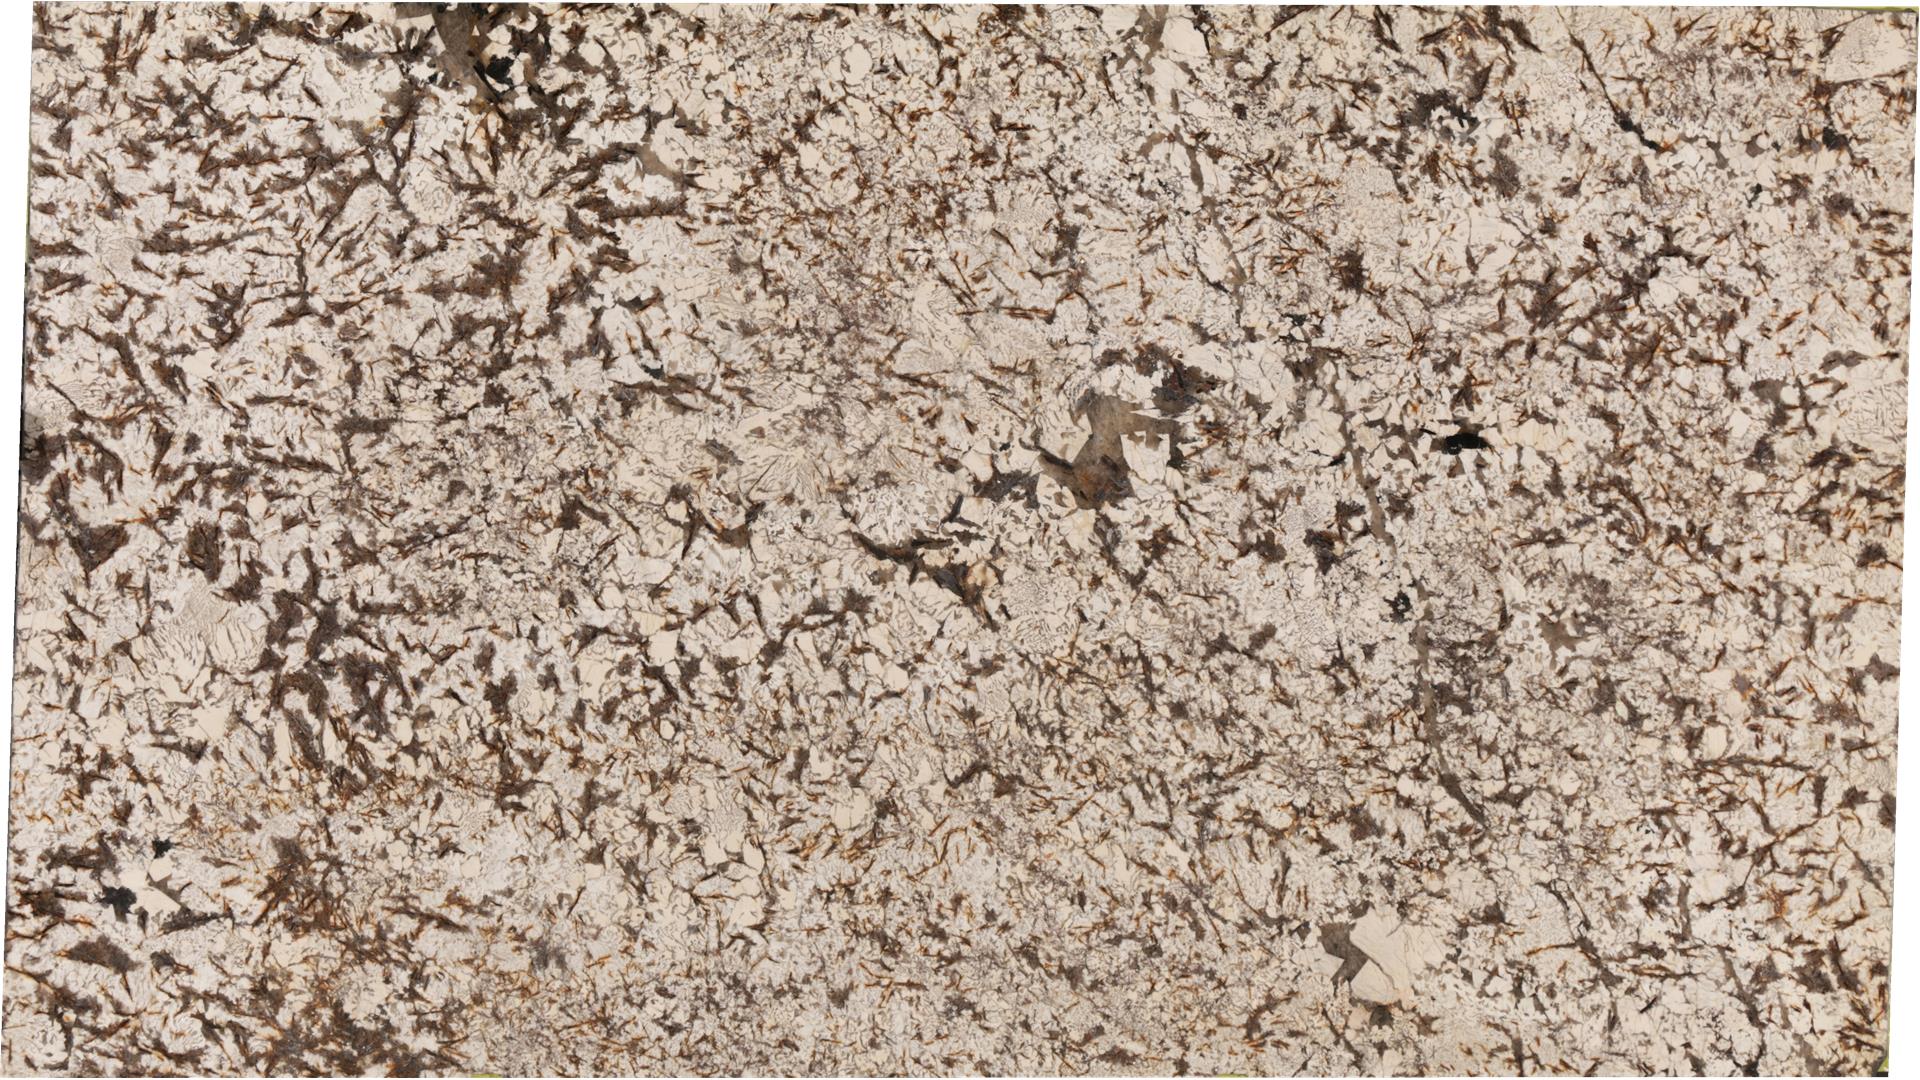 Bariloche (Gr) Granite Slabs